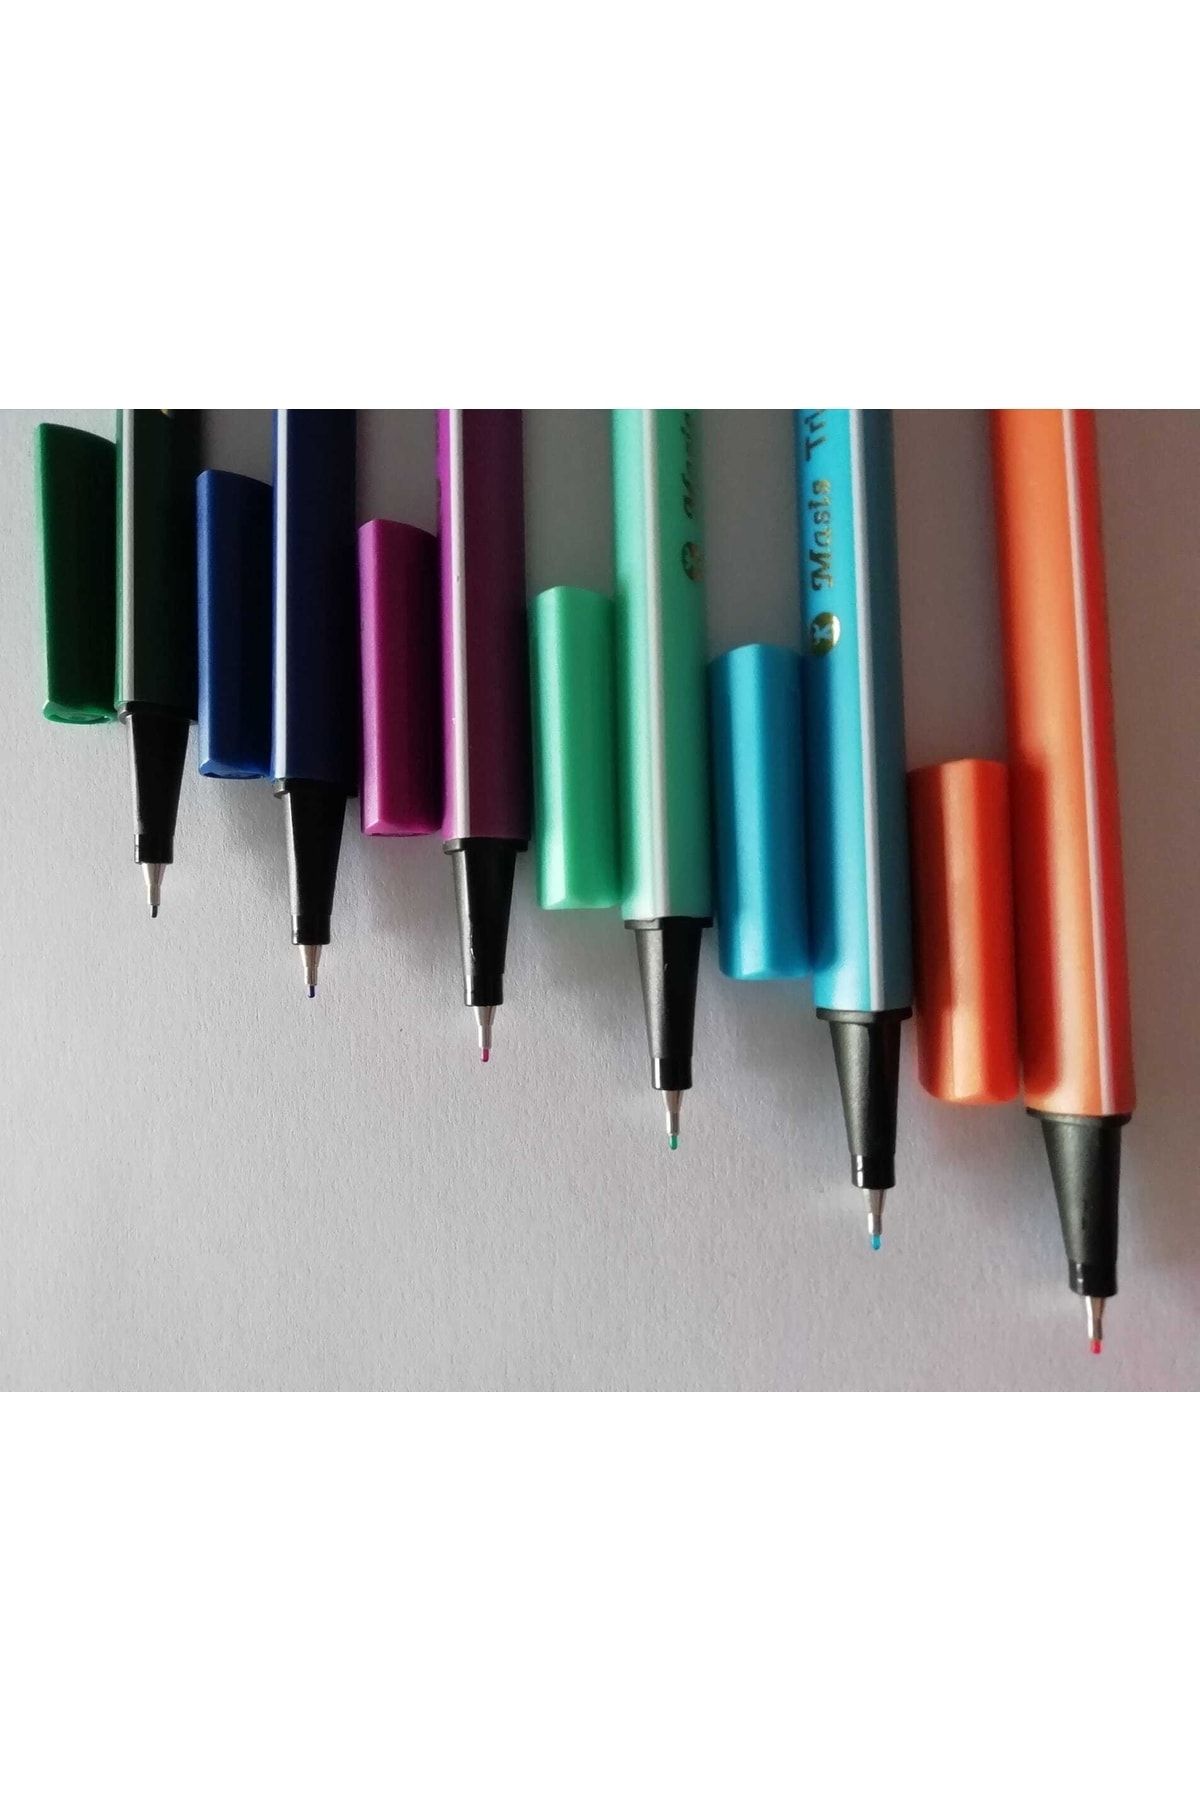 Masis Karışık Renk Üçgen Tutuş Özelliği Ile Trio Pen Fineliner 0.4 Ince Uçlu Başlık-keçeli Kalem (6 Adet)